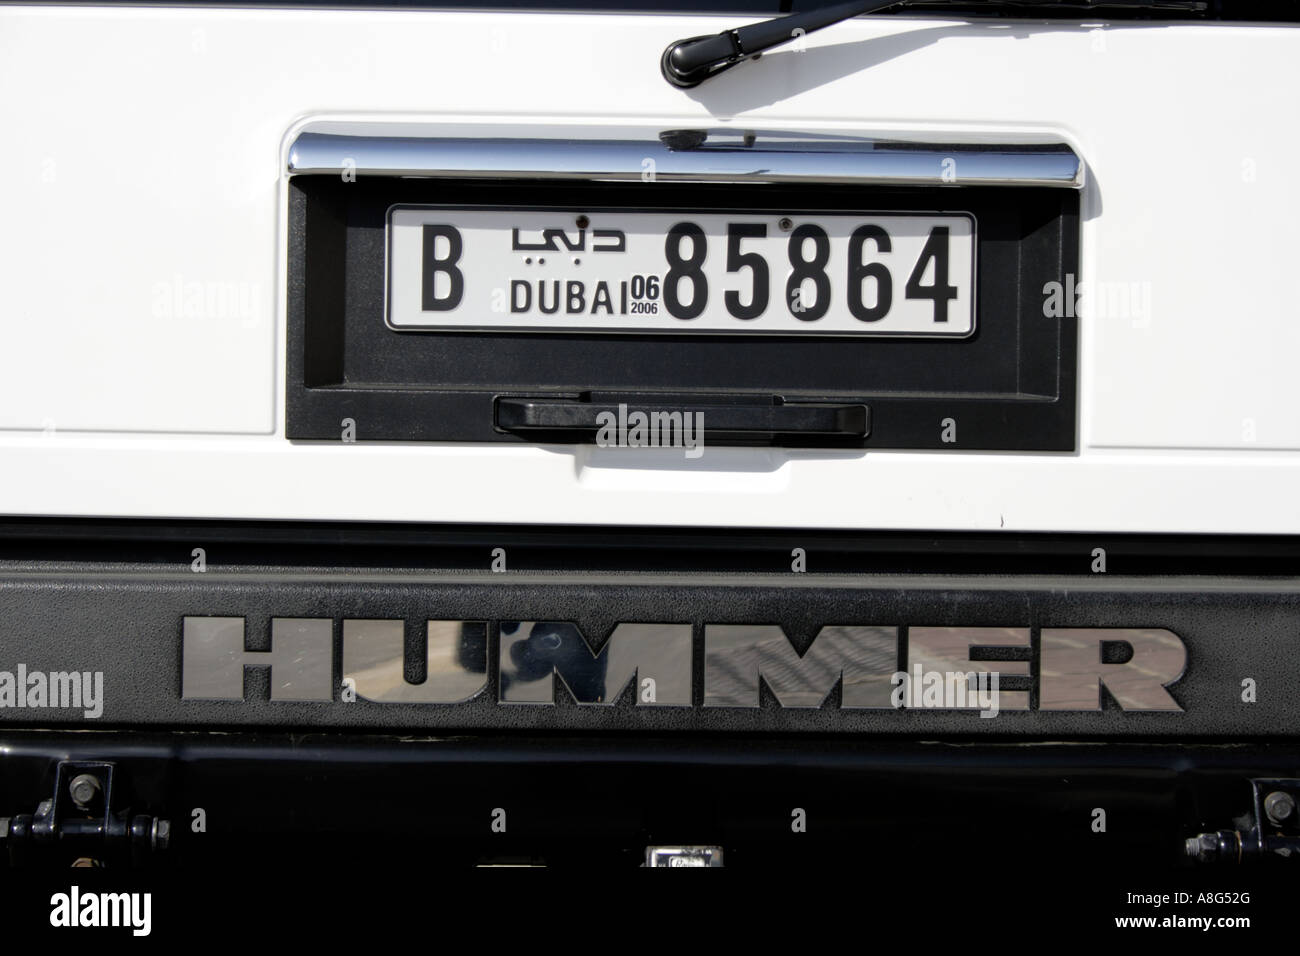 Kfz-Kennzeichen von Hummer, teure Geländewagen, Dubai, Vereinigte Arabische Emirate. Foto: Willy Matheisl Stockfoto